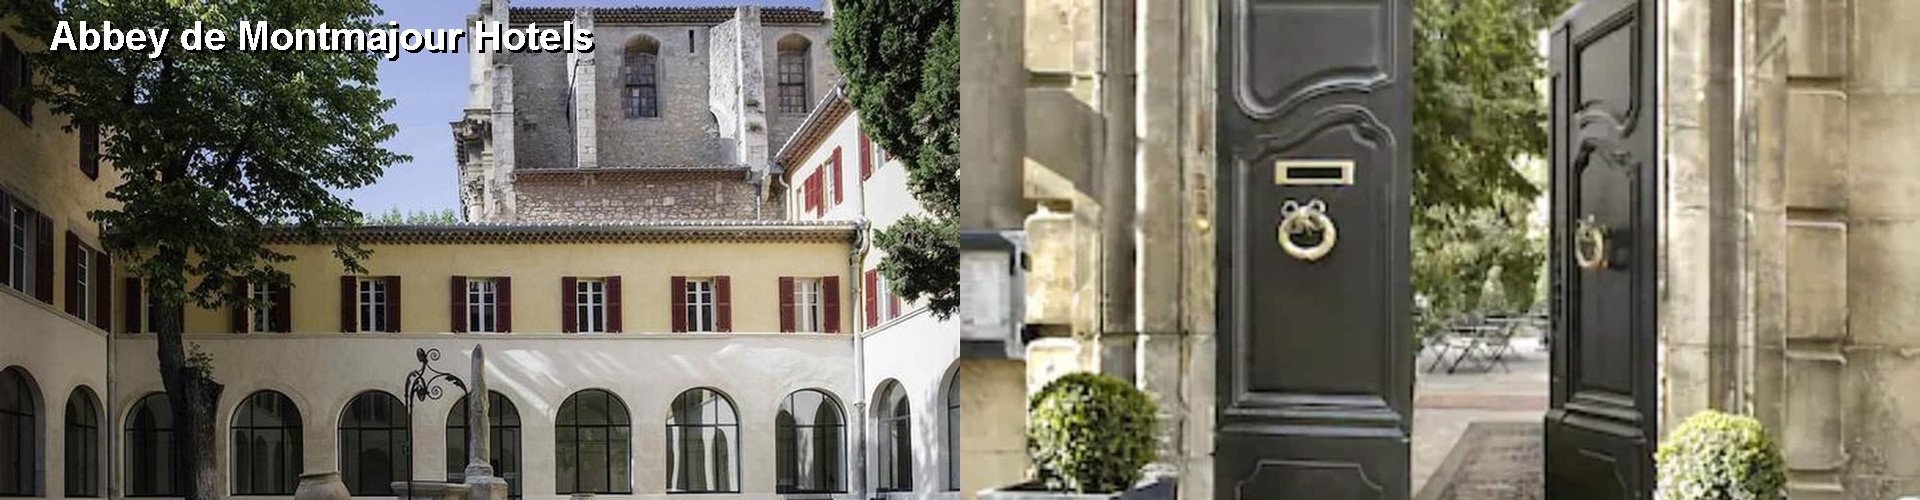 5 Best Hotels near Abbey de Montmajour